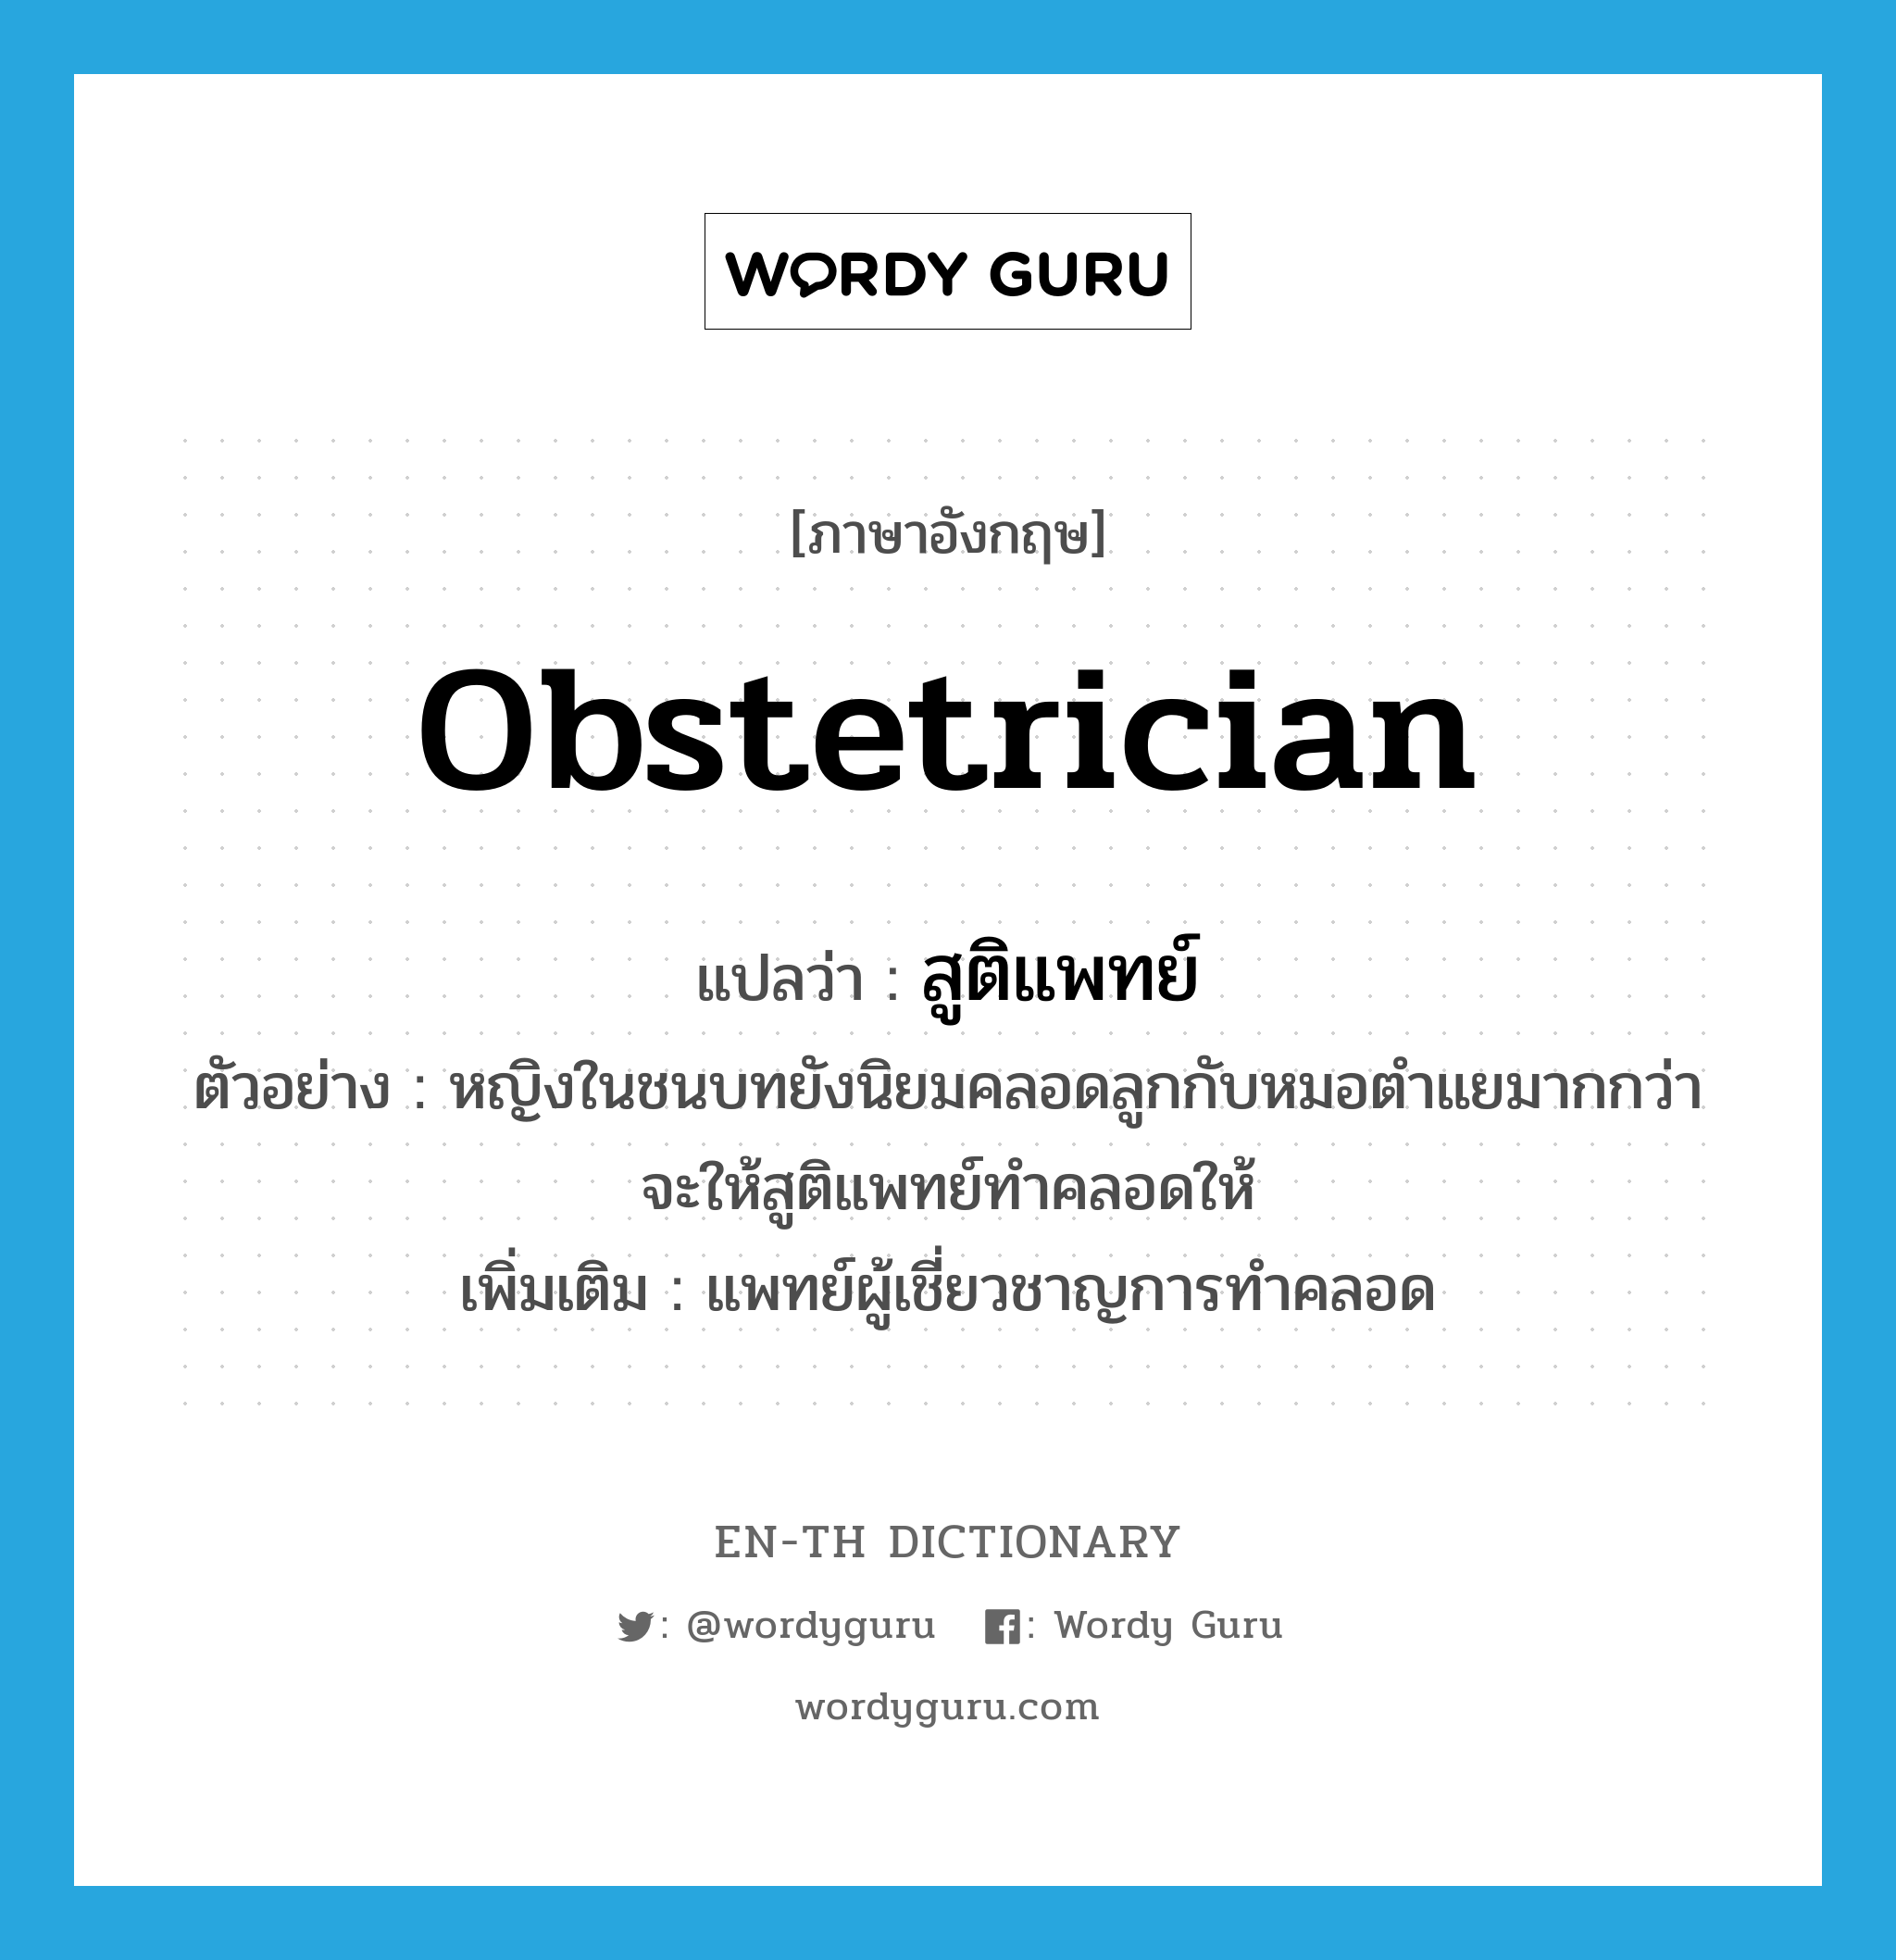 obstetrician แปลว่า?, คำศัพท์ภาษาอังกฤษ obstetrician แปลว่า สูติแพทย์ ประเภท N ตัวอย่าง หญิงในชนบทยังนิยมคลอดลูกกับหมอตำแยมากกว่าจะให้สูติแพทย์ทำคลอดให้ เพิ่มเติม แพทย์ผู้เชี่ยวชาญการทำคลอด หมวด N